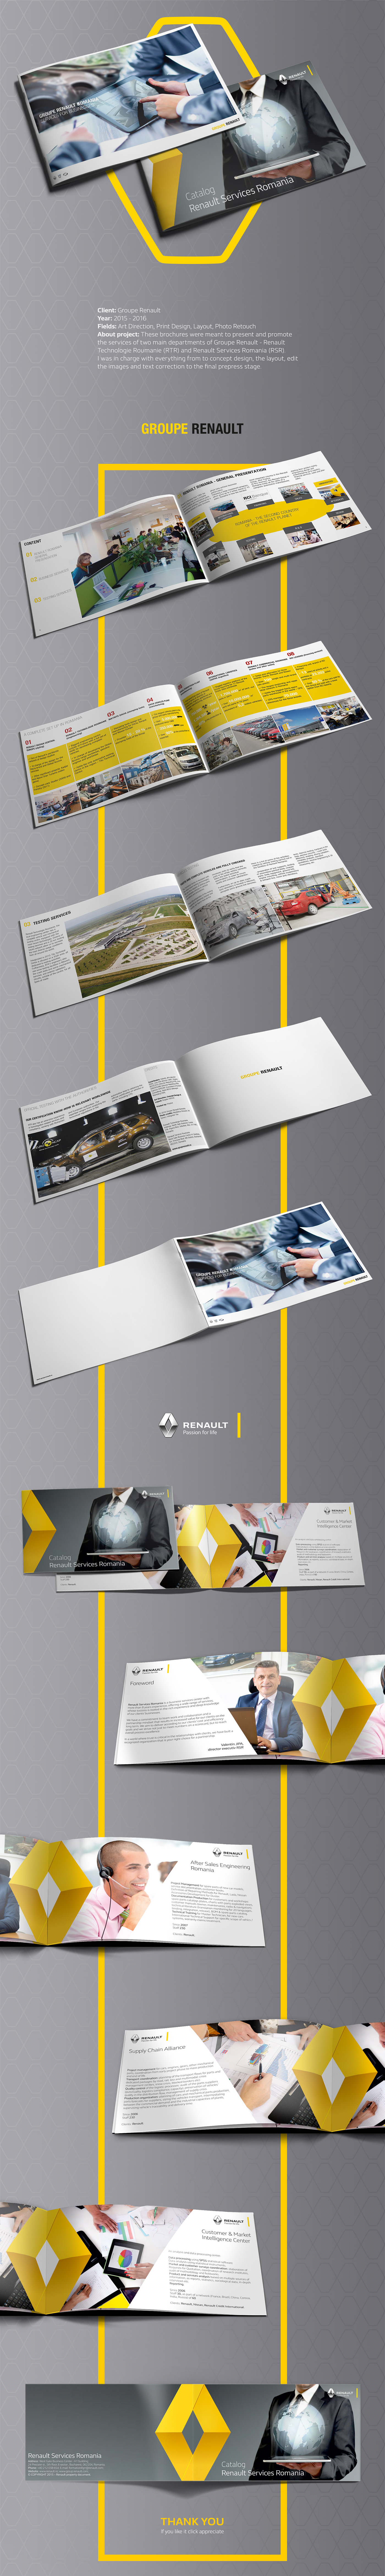 brochure renault corporate creative Landscape